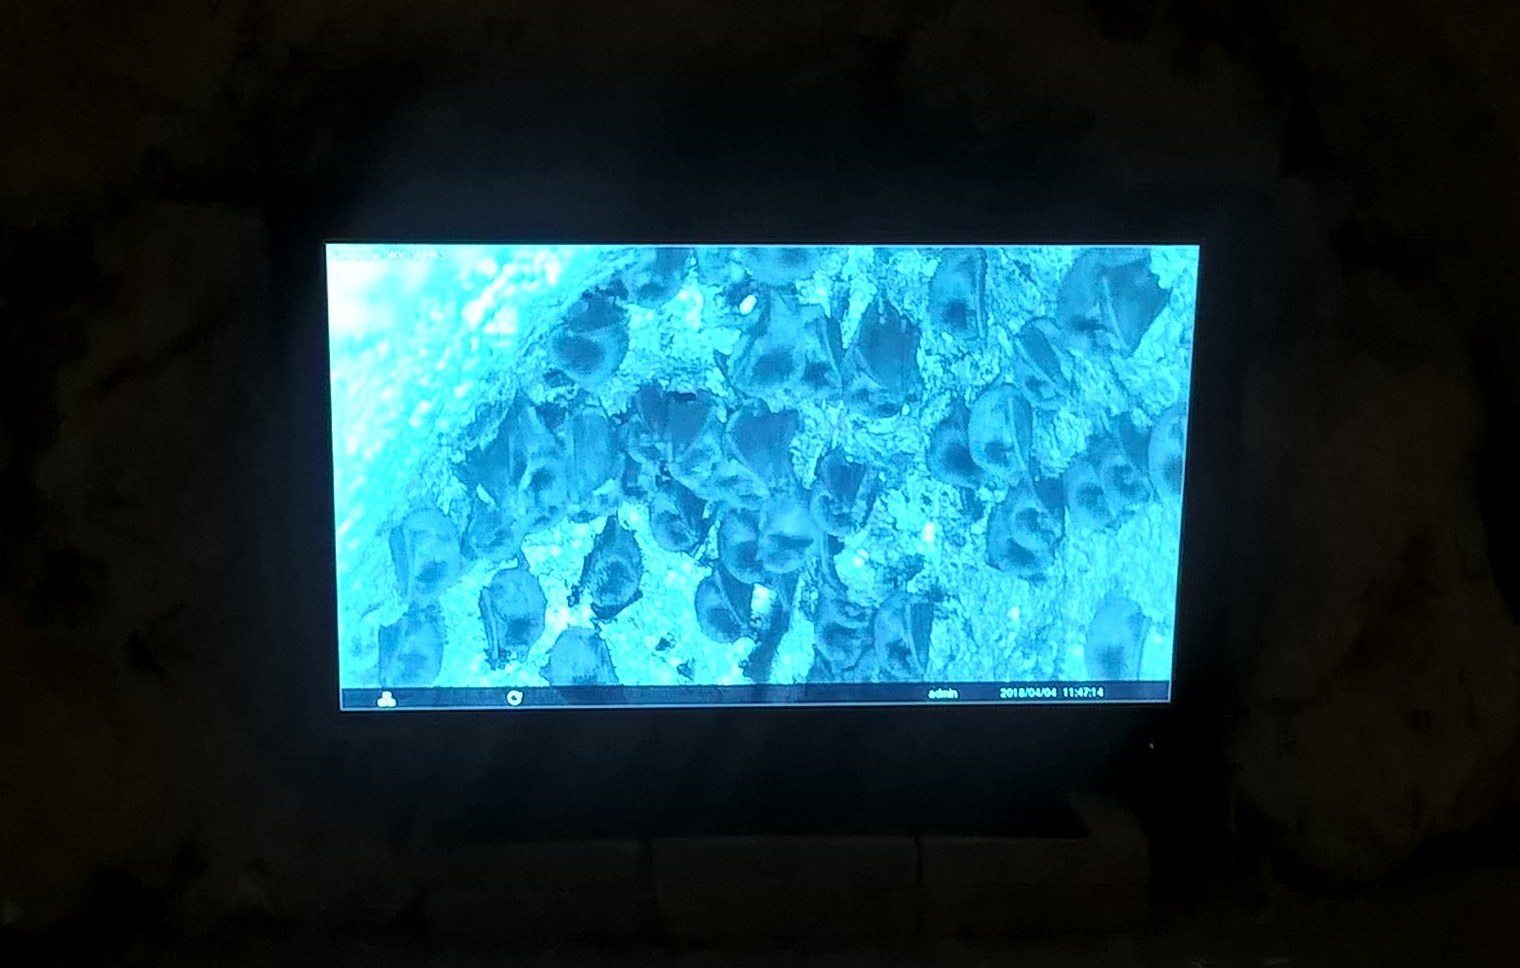 Pipistrelli visti sul monitor